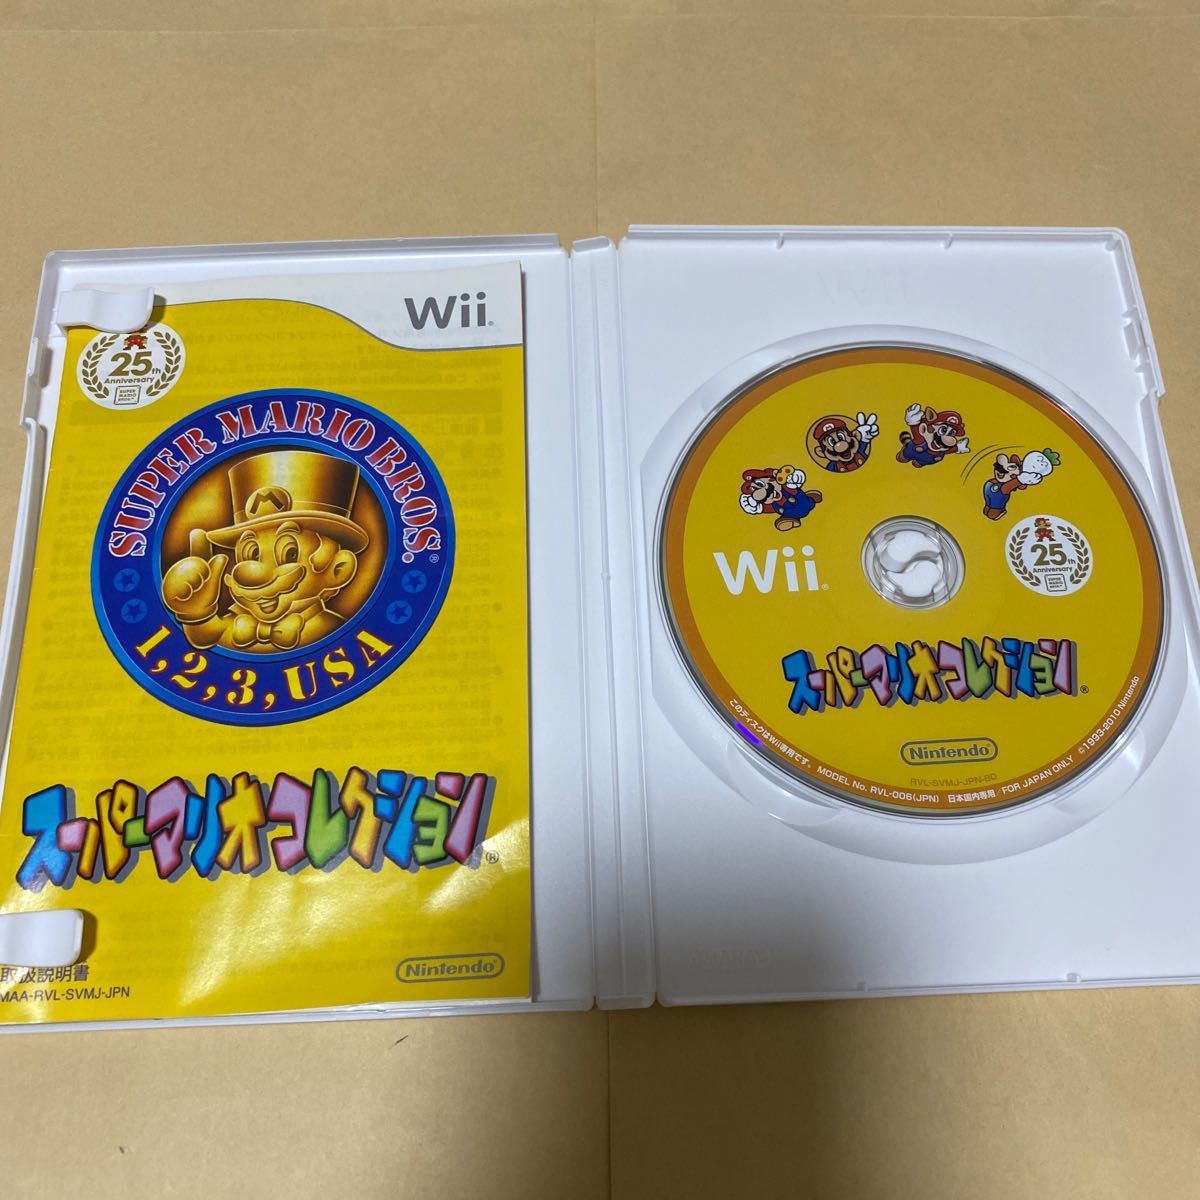 NewスーパーマリオブラザーズWiiと スーパーマリオコレクション Wii